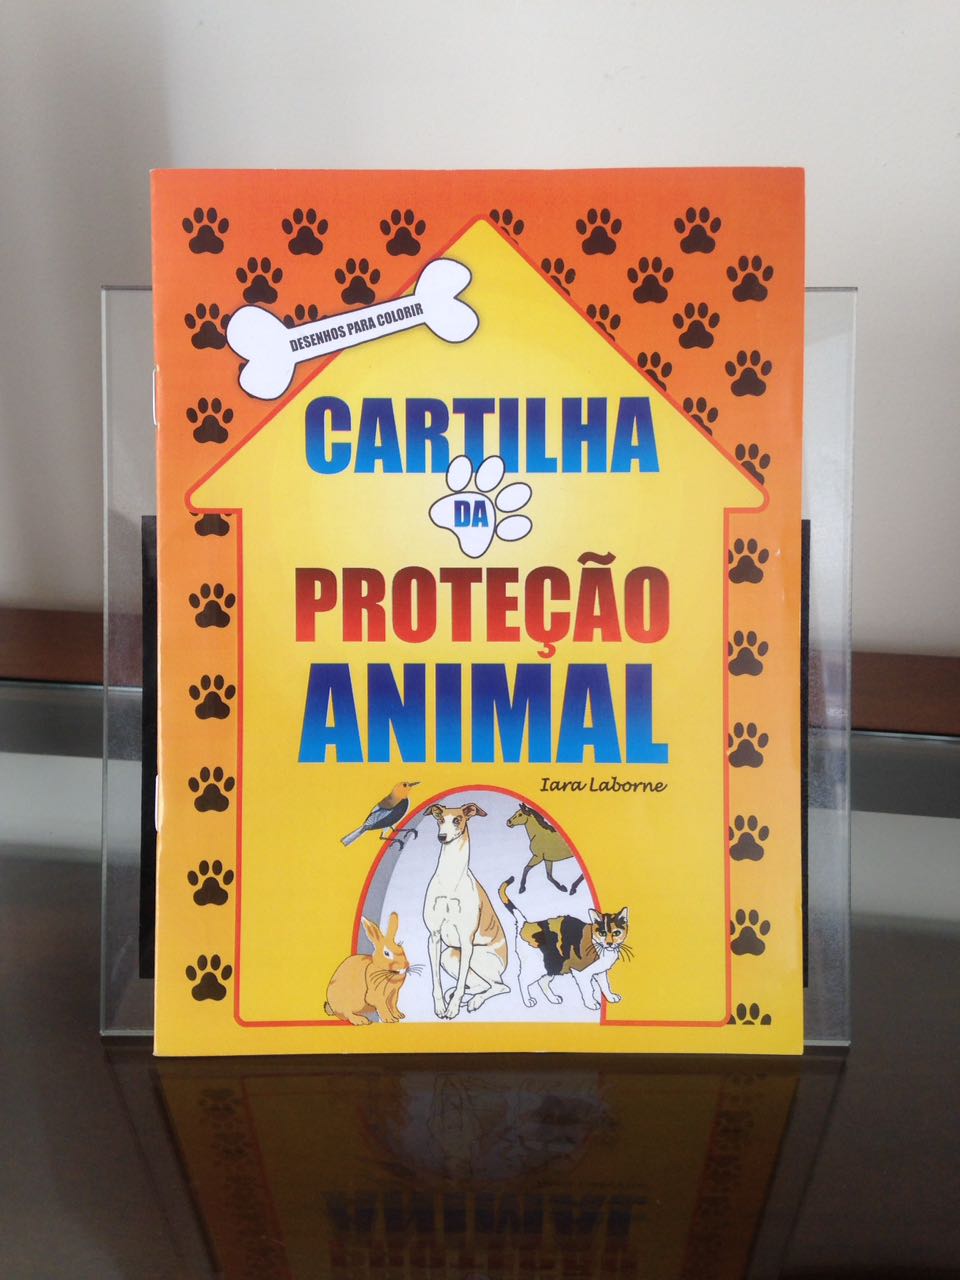 Cartilha da Proteção Animal será lançada em Caratinga